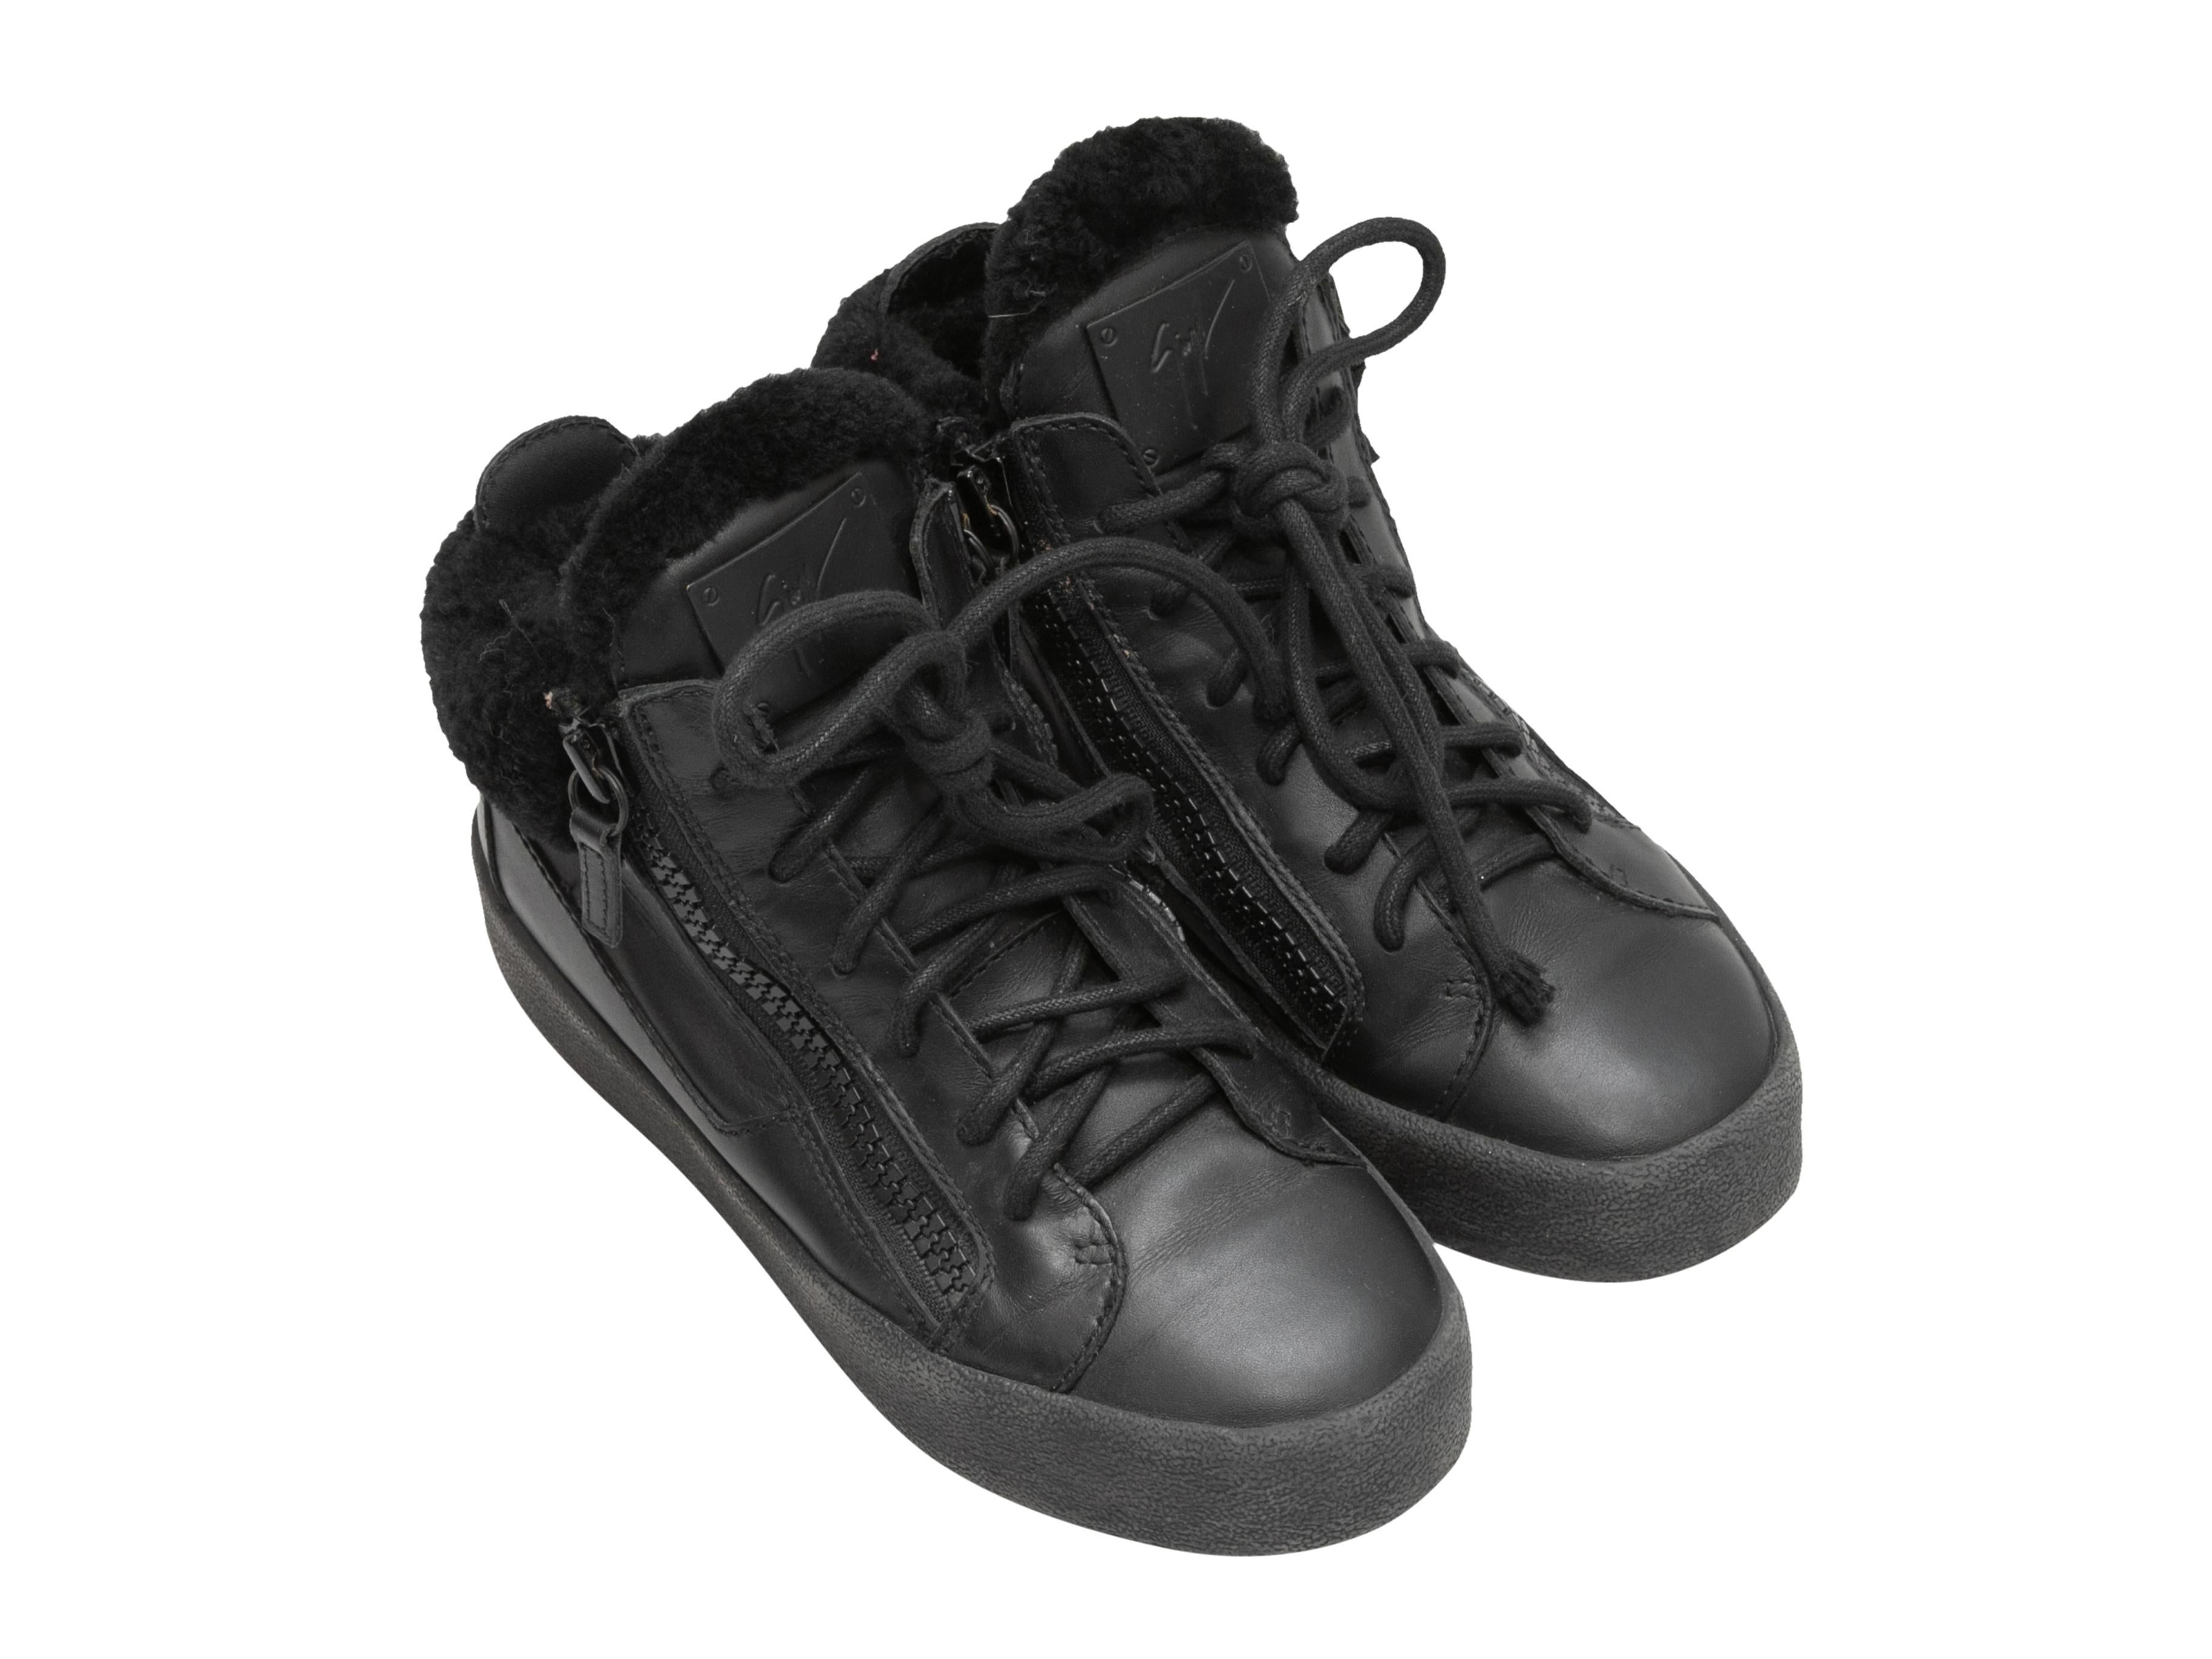 Schwarze High-Top-Sneaker aus Leder mit Scherenbesatz von Giuseppe Zanotti. Sohlen aus Gummi. Schnürung an den Oberteilen. Reißverschlüsse an den Seiten. 1